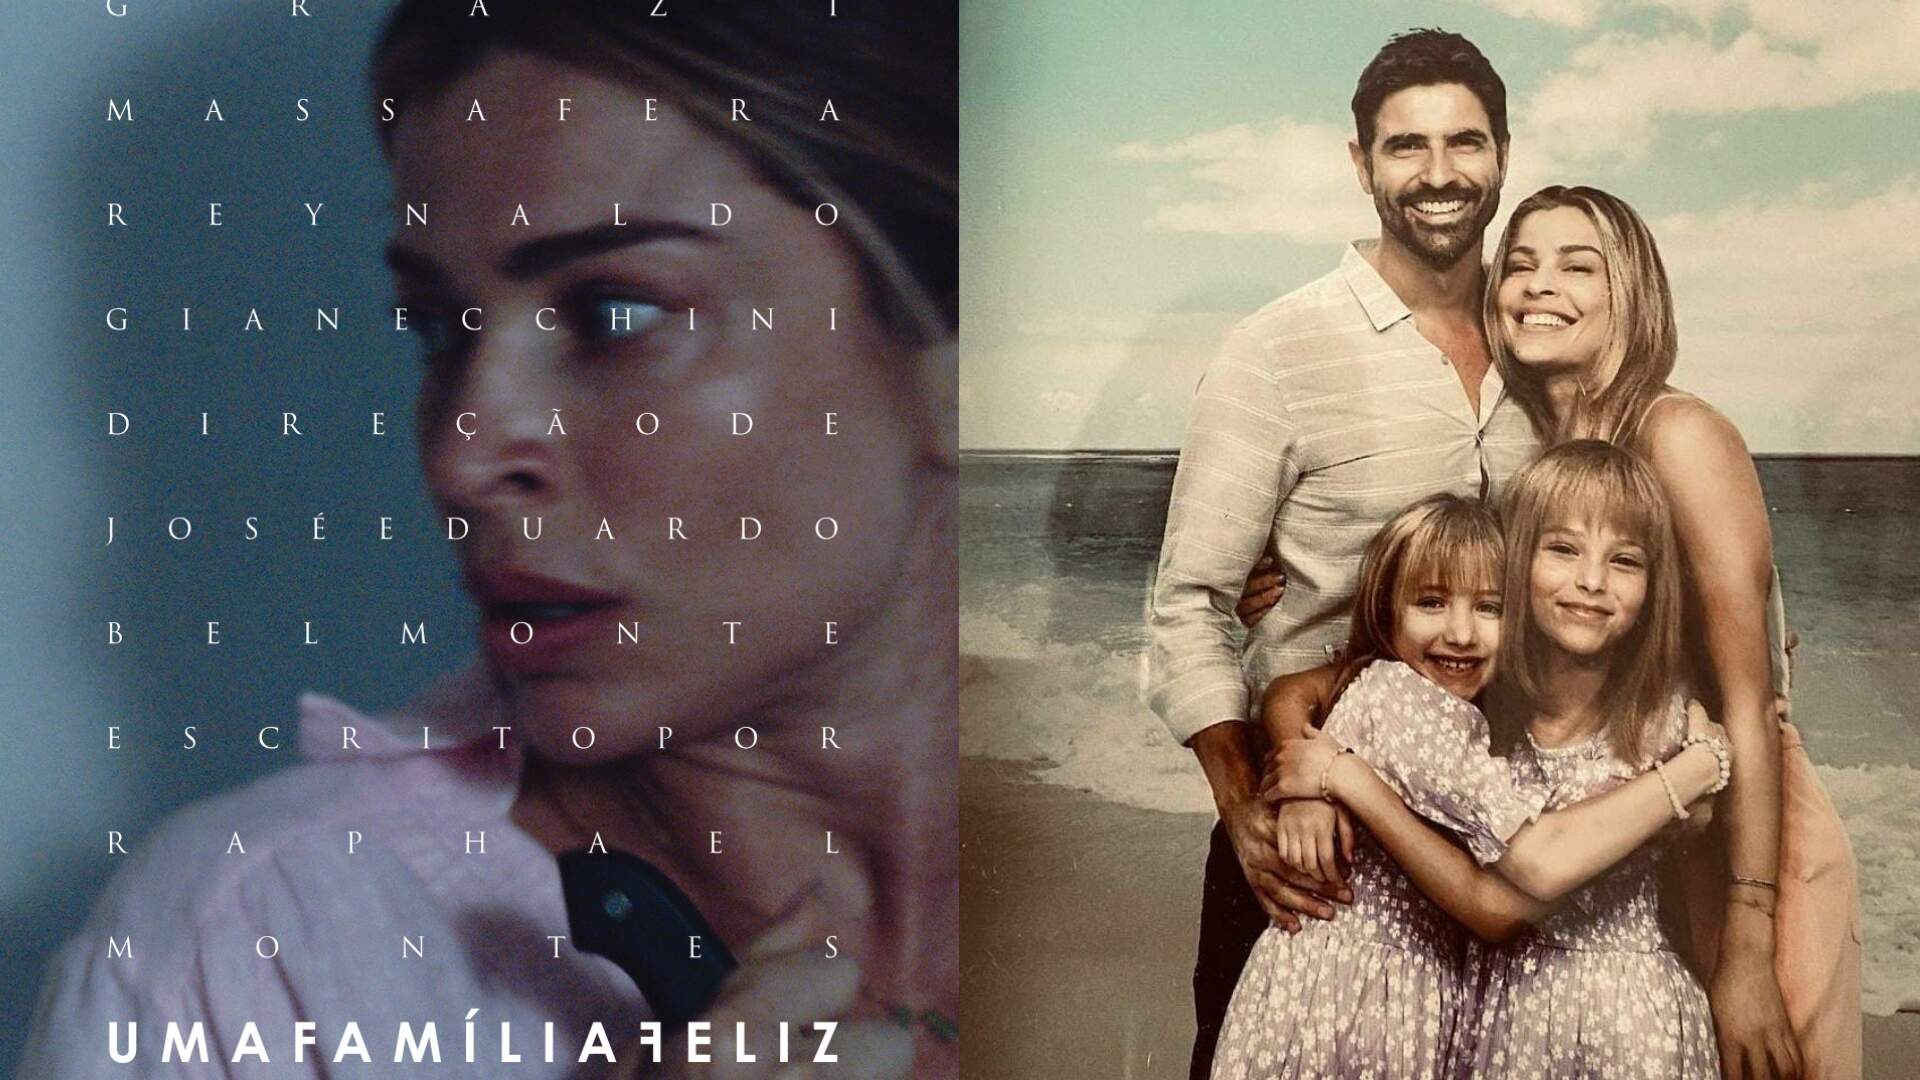 Uma Família Feliz: Luiza Antunes será filha de Grazi Massafera e Reynaldo Gianecchini no cinema! - Metropolitana FM